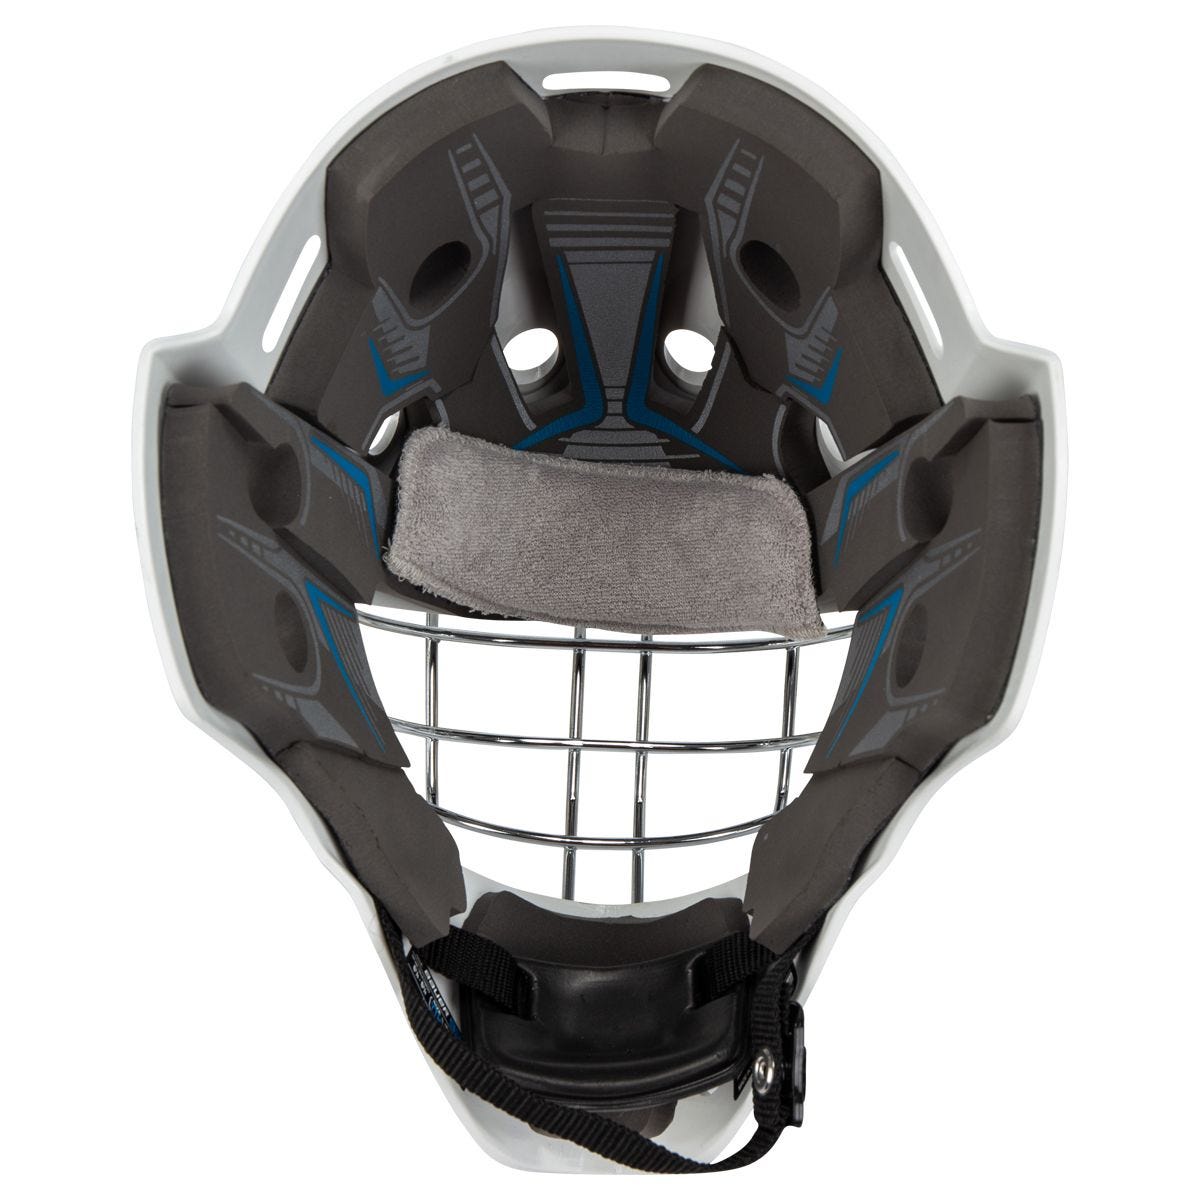 Шлем вратаря Bauer 930 S20 детский